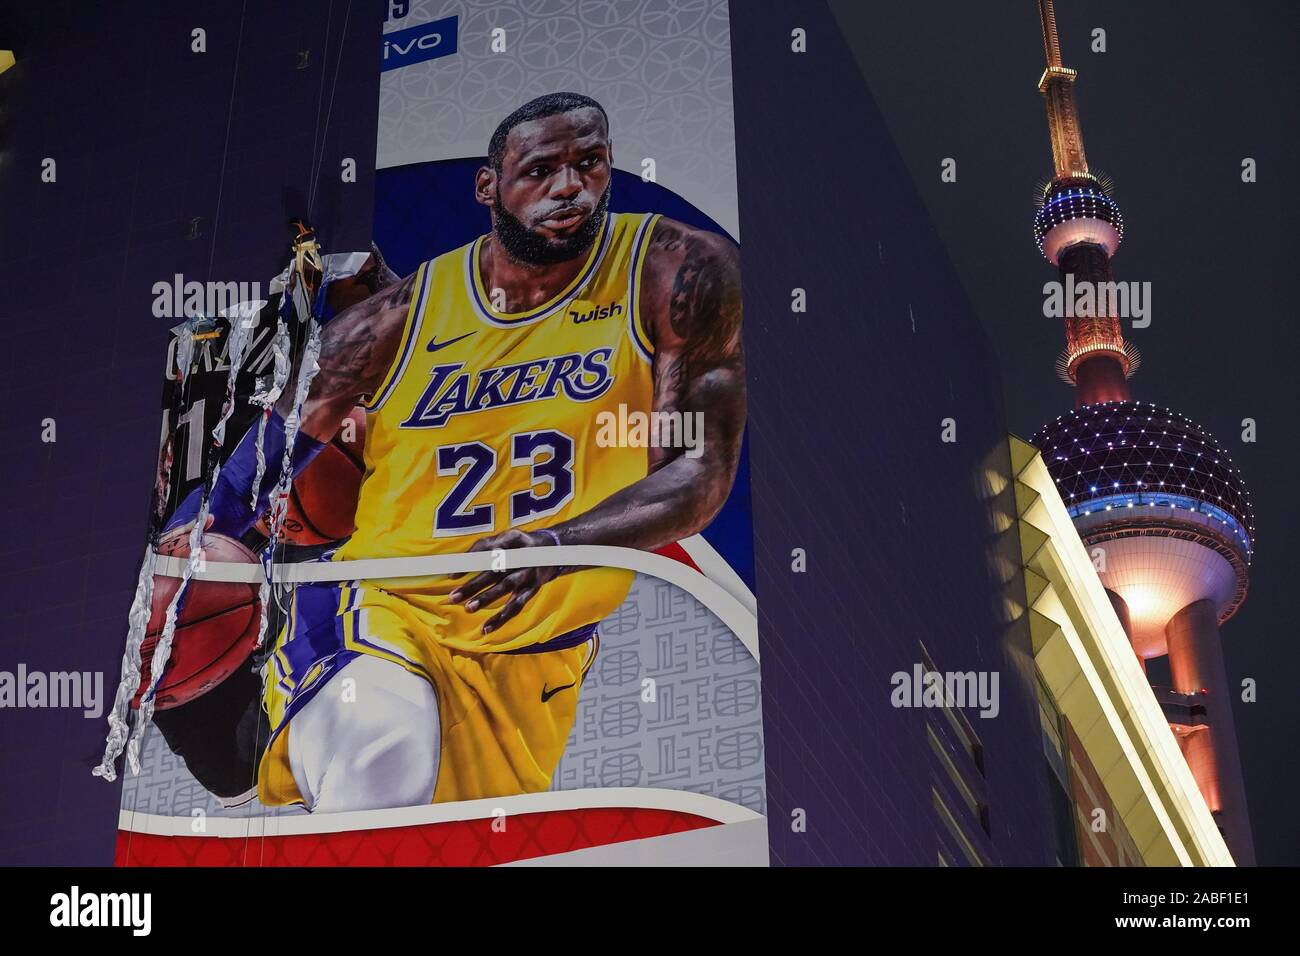 Les travailleurs de la construction dismentle une gigantesque affiche de la NBA NBA avant 2019 à Lujiazui Shanghai, Shanghai, Chine, le 9 octobre 2019. Banque D'Images